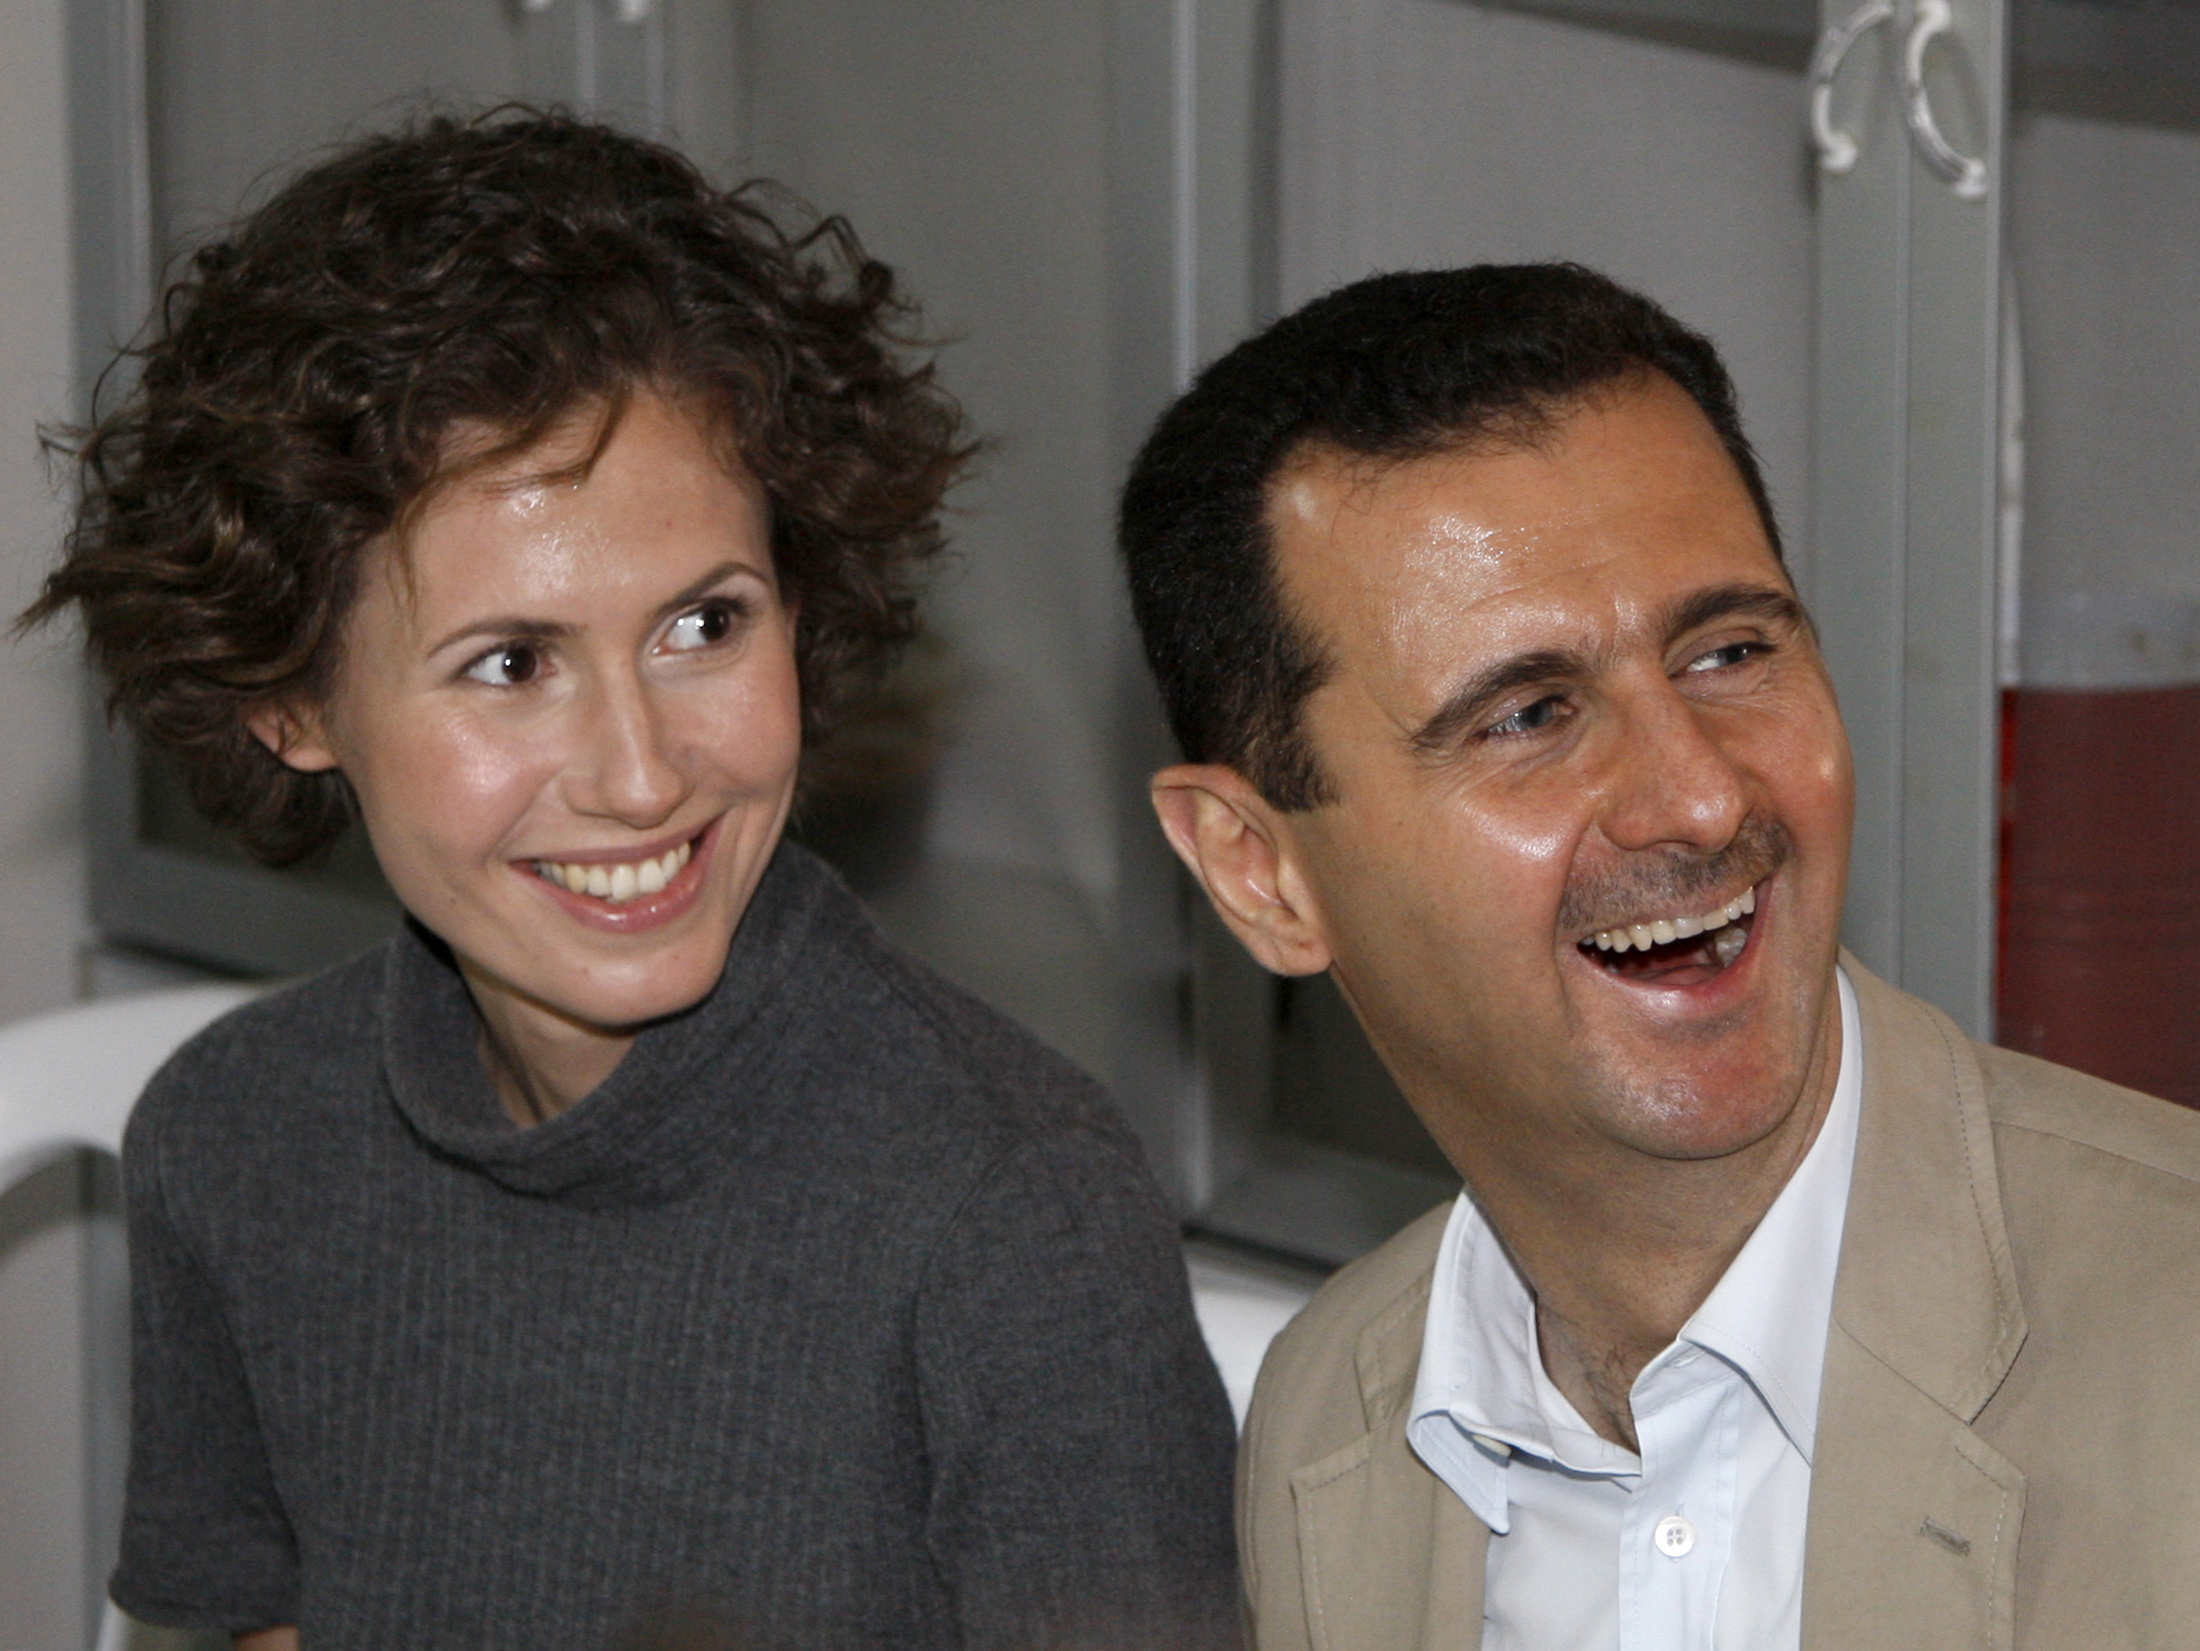  السيدة أسماء الأسد تنتصر على السرطان